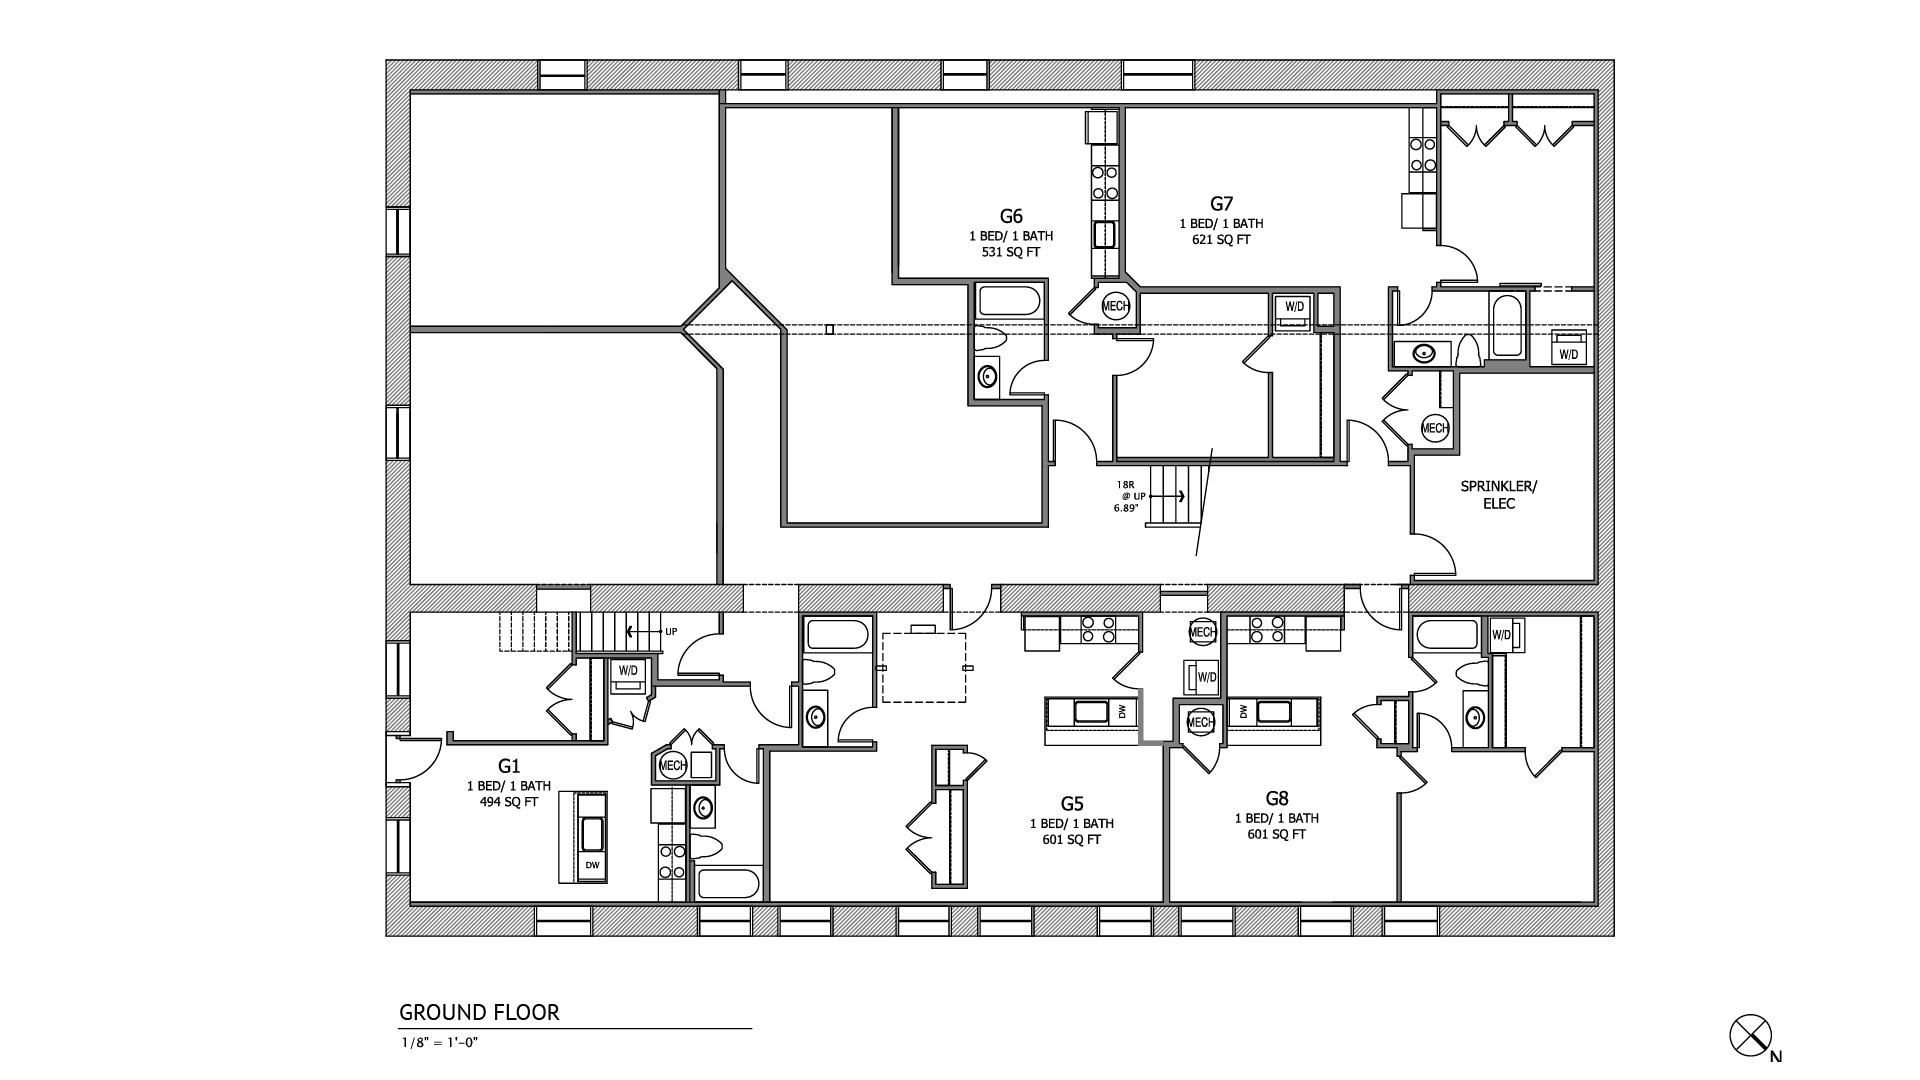 Ground floor floor plan